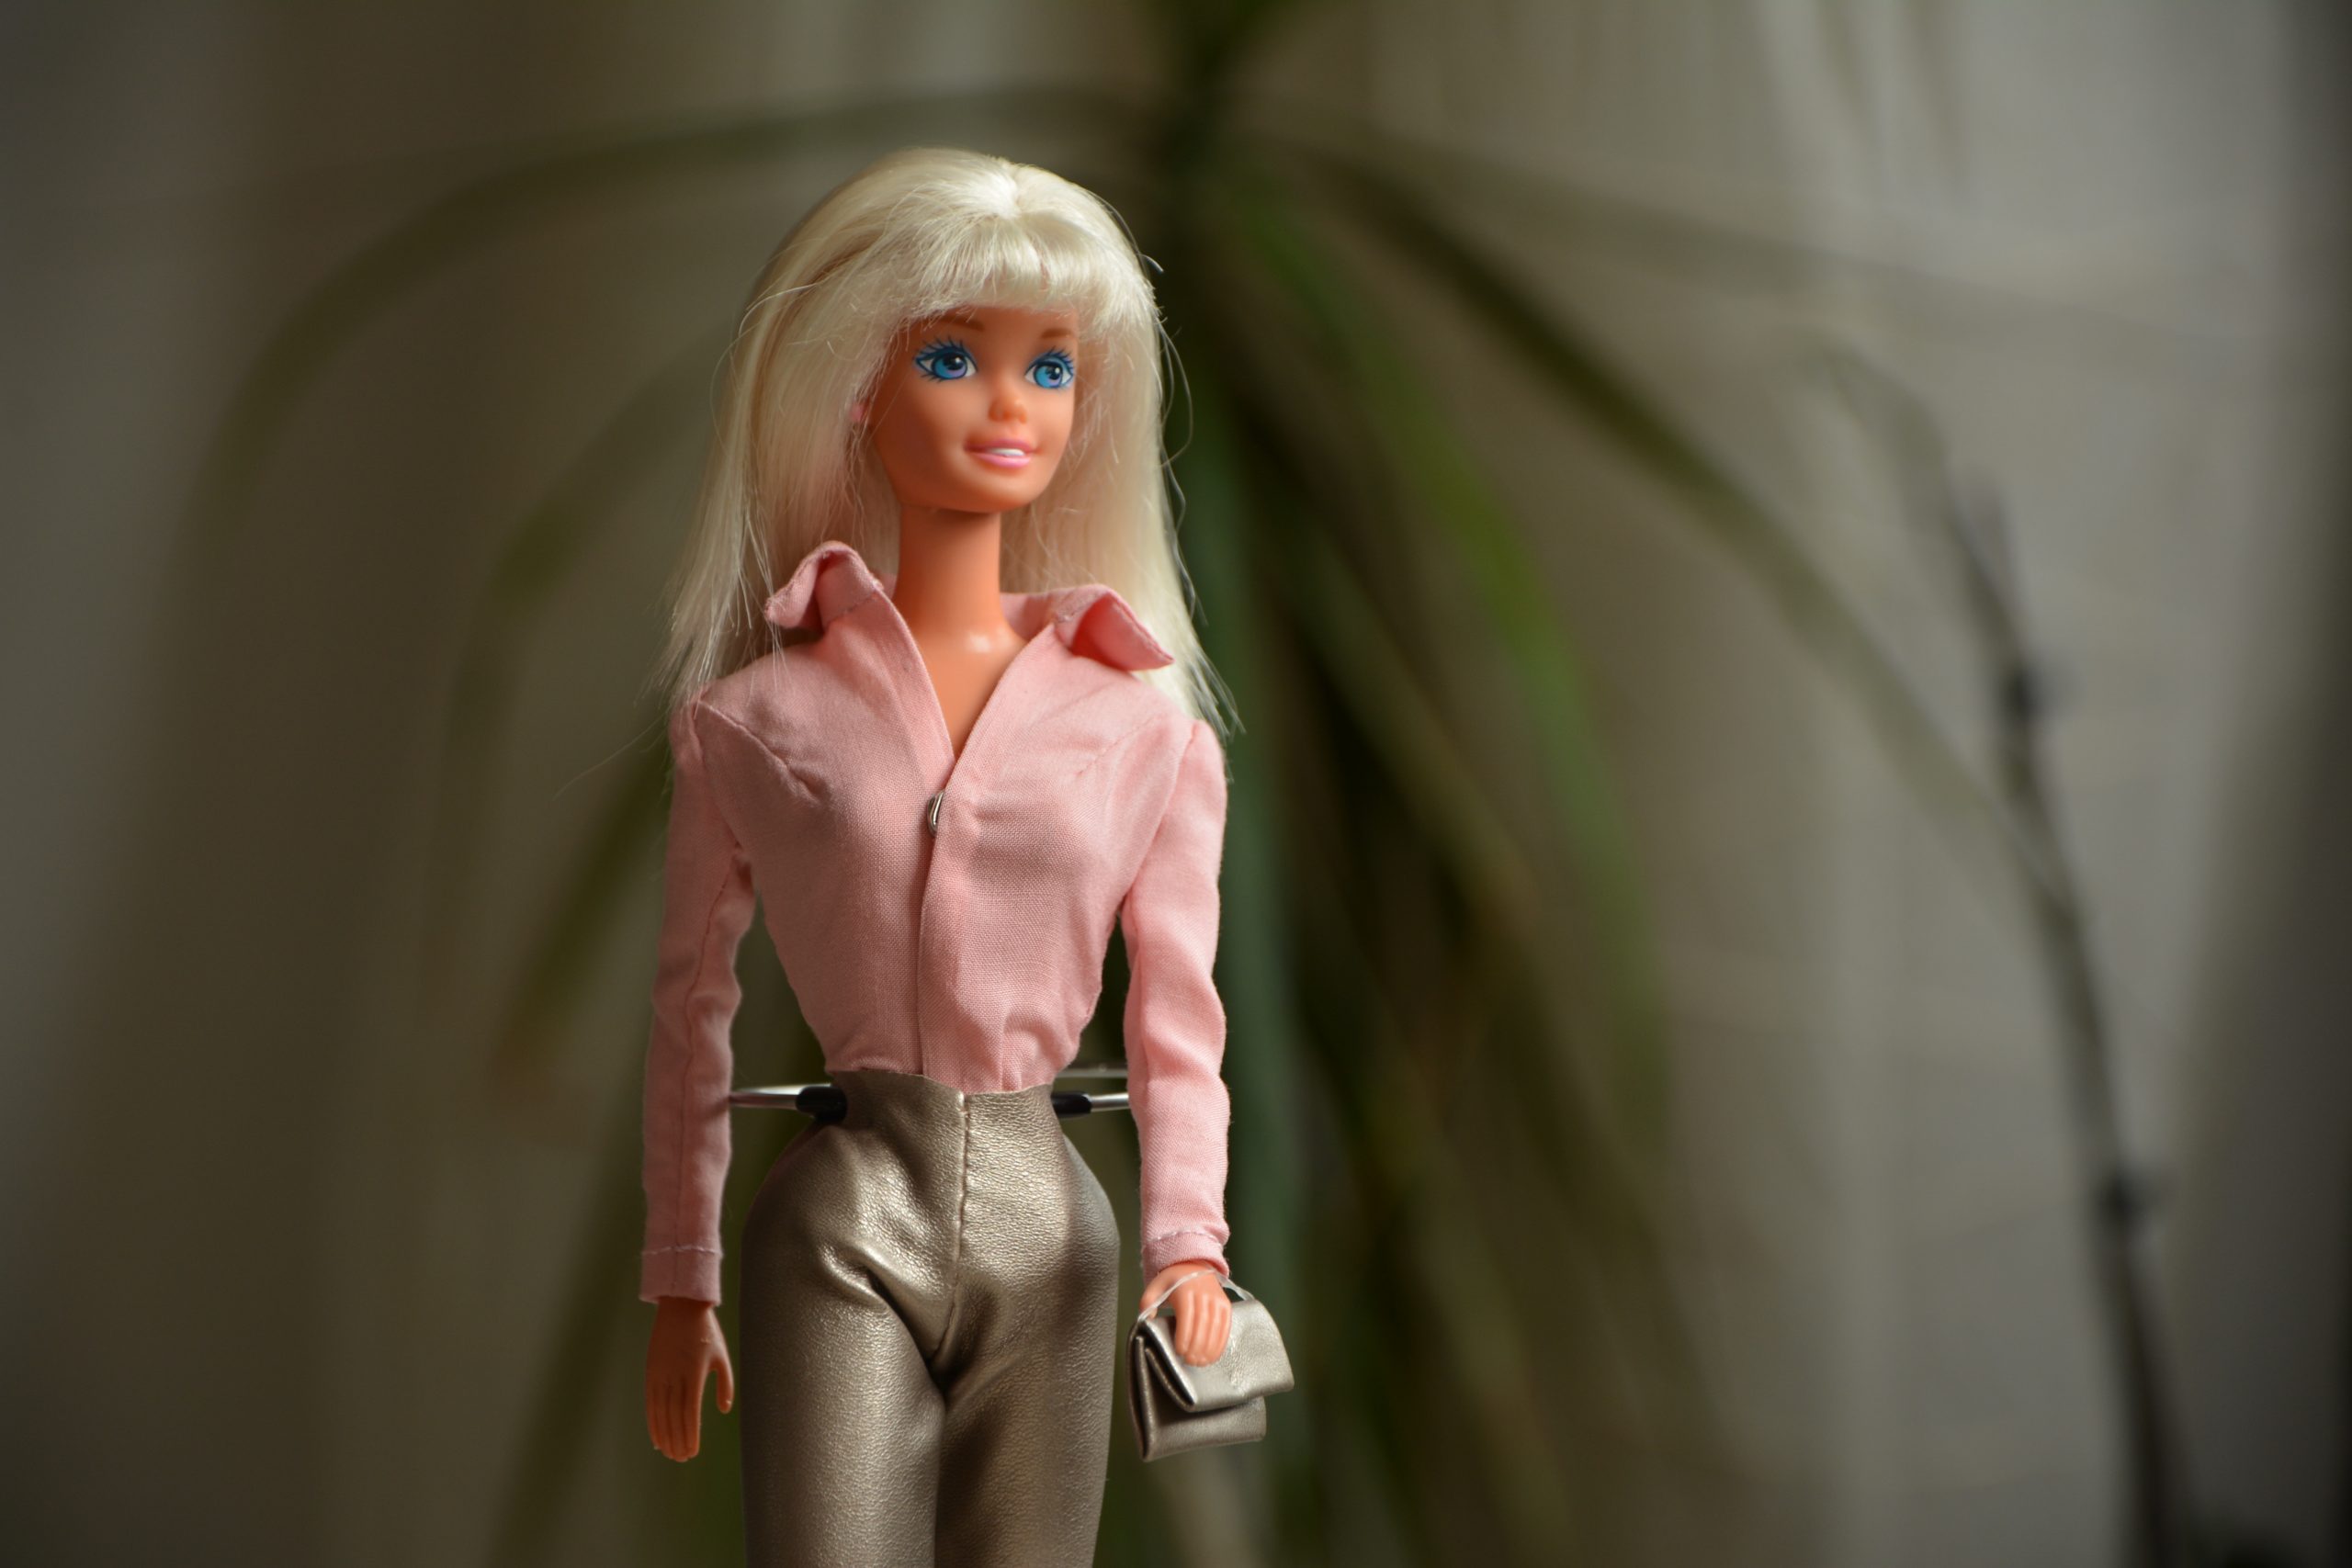 Barbie-doll male Ken Army-Look semi-portrait no property release